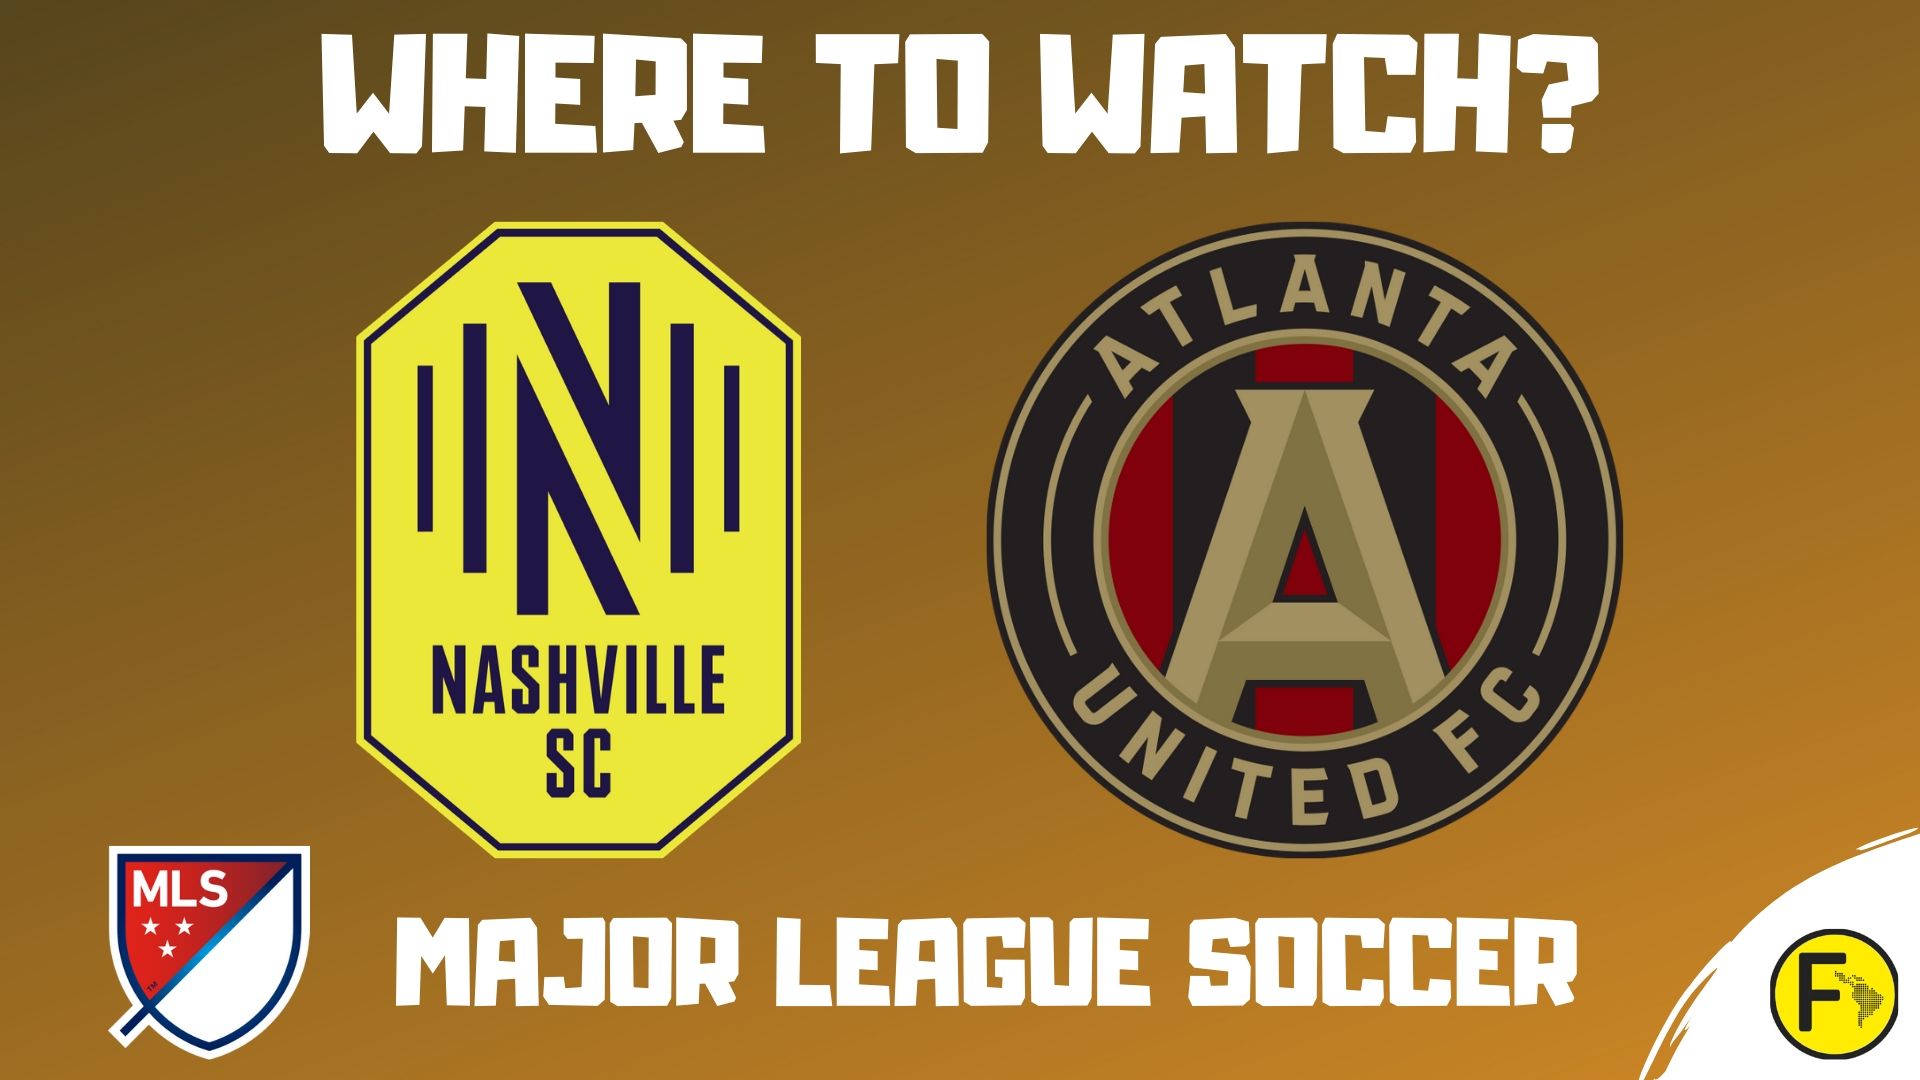 Nashville SC vs Atlanta United MLS 2020